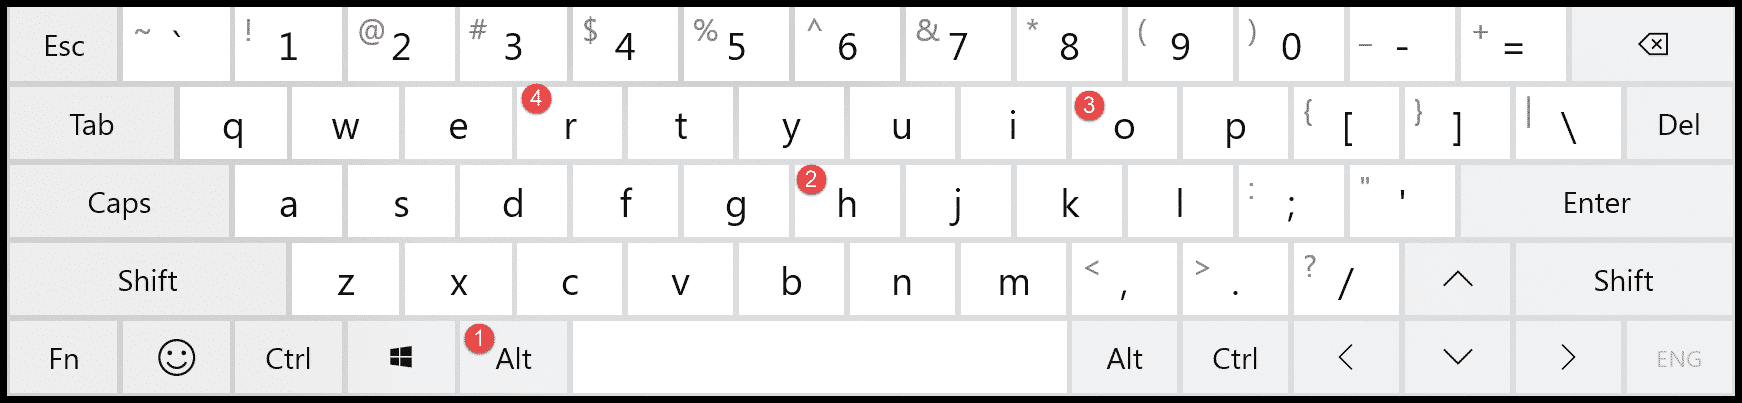 método abreviado de teclado para cambiar el nombre de la hoja